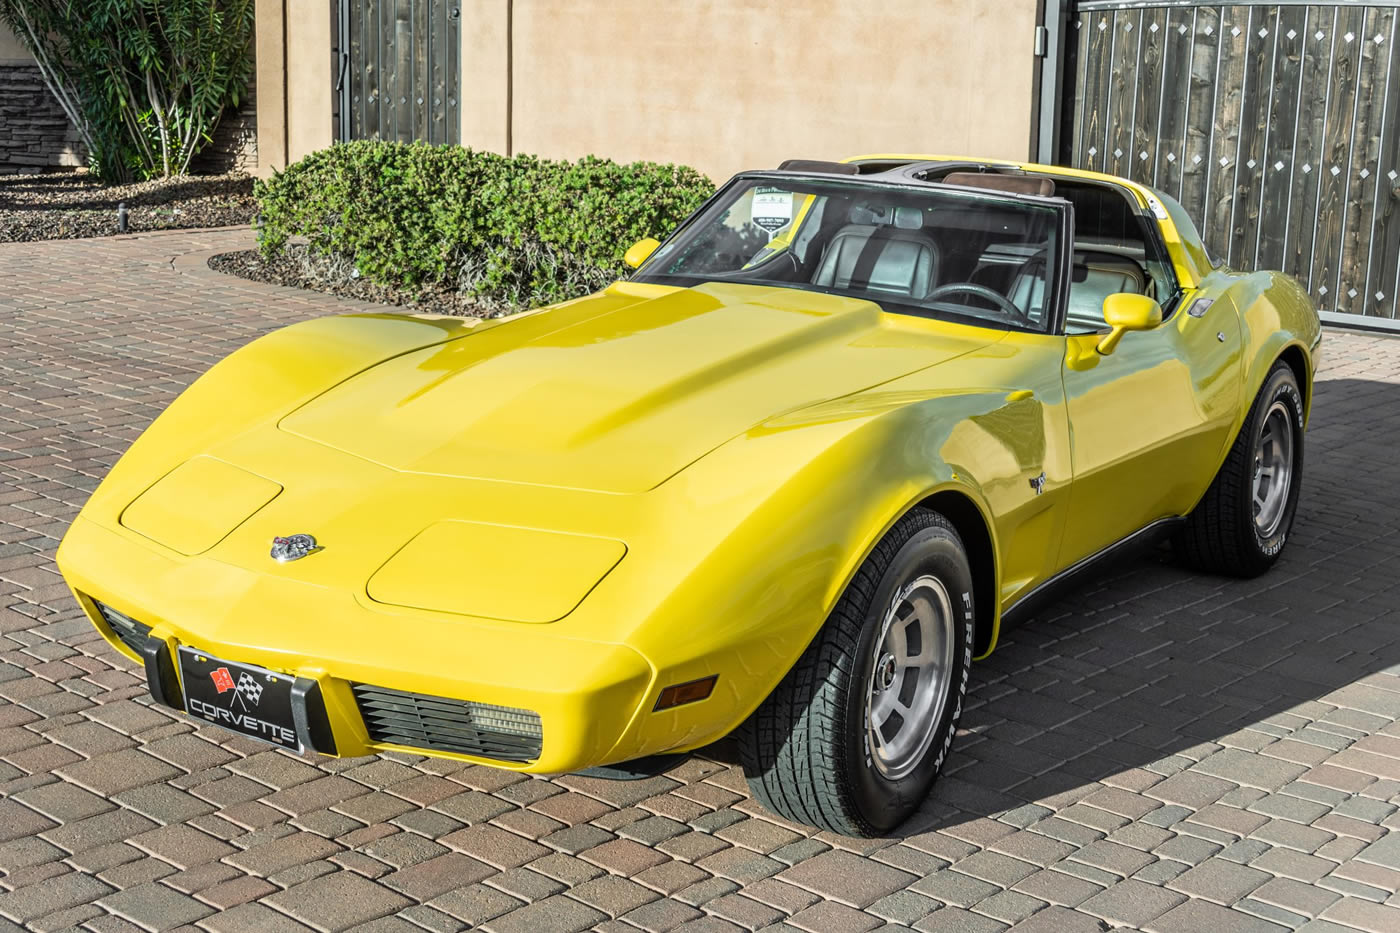 1978 Corvette in Corvette Yellow